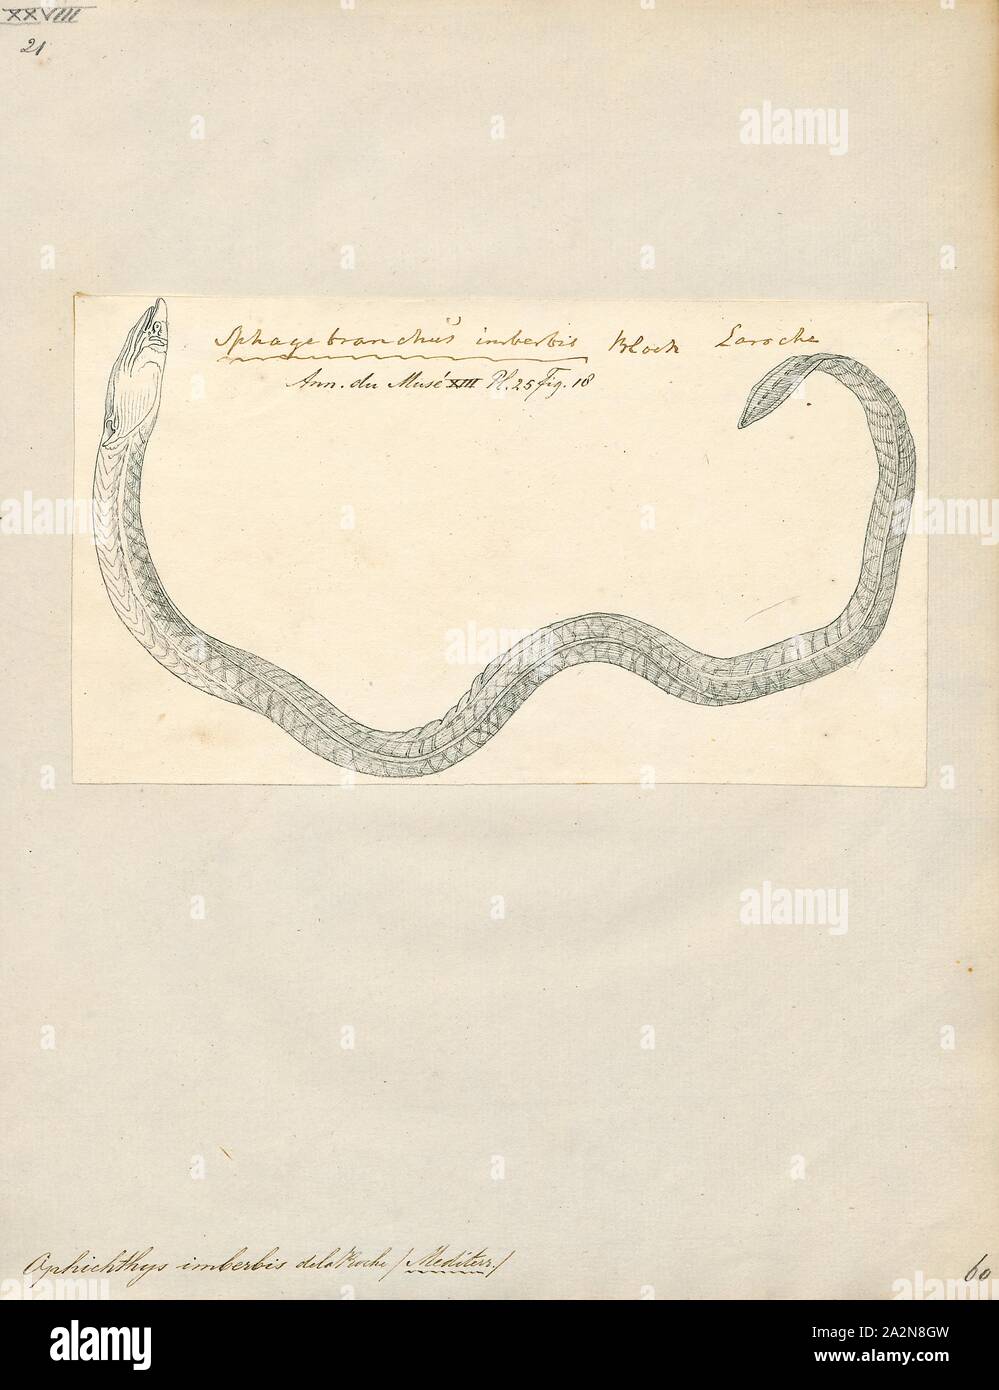 Ophichthys imberbis, Ausdrucken, die armlose Snake eel (Dalophis imberbis) ist ein Aal in der Familie Ophichthidae (Worm/schlangenaalen). Es wurde von François Étienne Delaroche im Jahre 1809 beschrieben. Es ist ein subtropisches, marine Aal, die von der östlichen Atlantik bekannt ist, darunter Spanien, Mauretanien, und das Mittelmeer. Er wohnt in einer Tiefe von 20 - 80 m und bildet Burrows in Schlamm oder Sand. Männchen können eine maximale Länge von 150 Zentimetern erreichen., 1809 Stockfoto